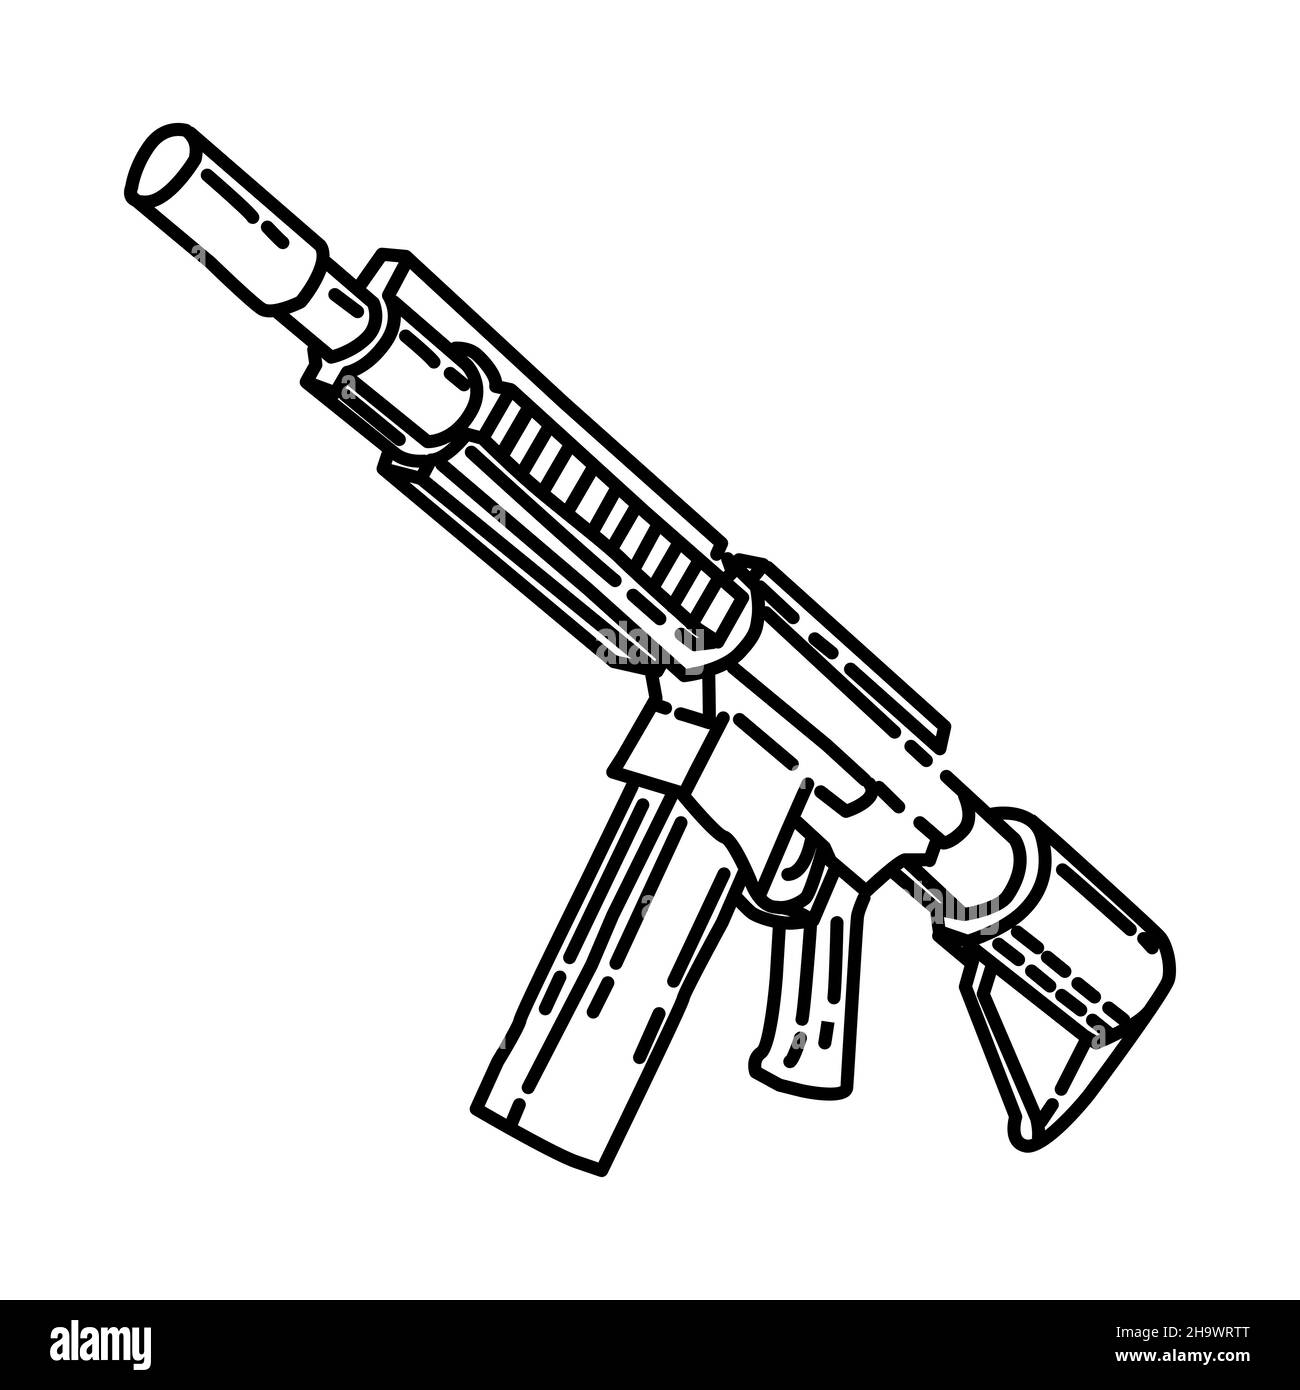 Marine Corp Carbine Rifle fait partie des équipements militaires et de corps de marine dessin à la main icône ensemble Vector Illustration de Vecteur